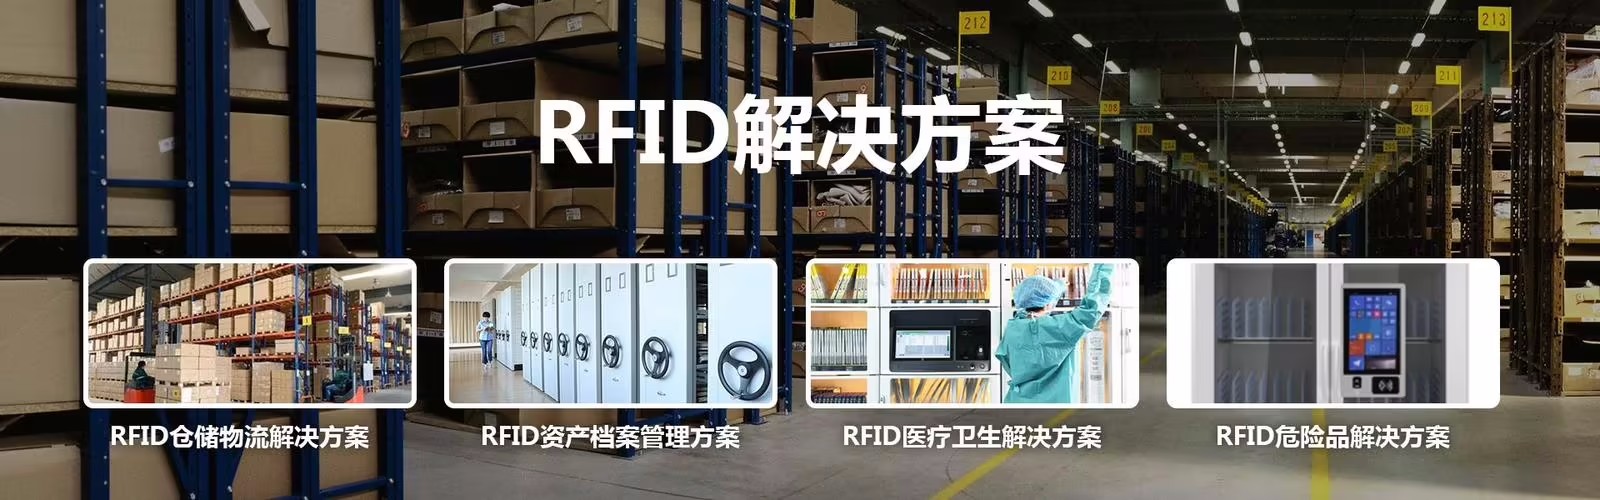  智能 RFID仓储物流管理系统定制开发